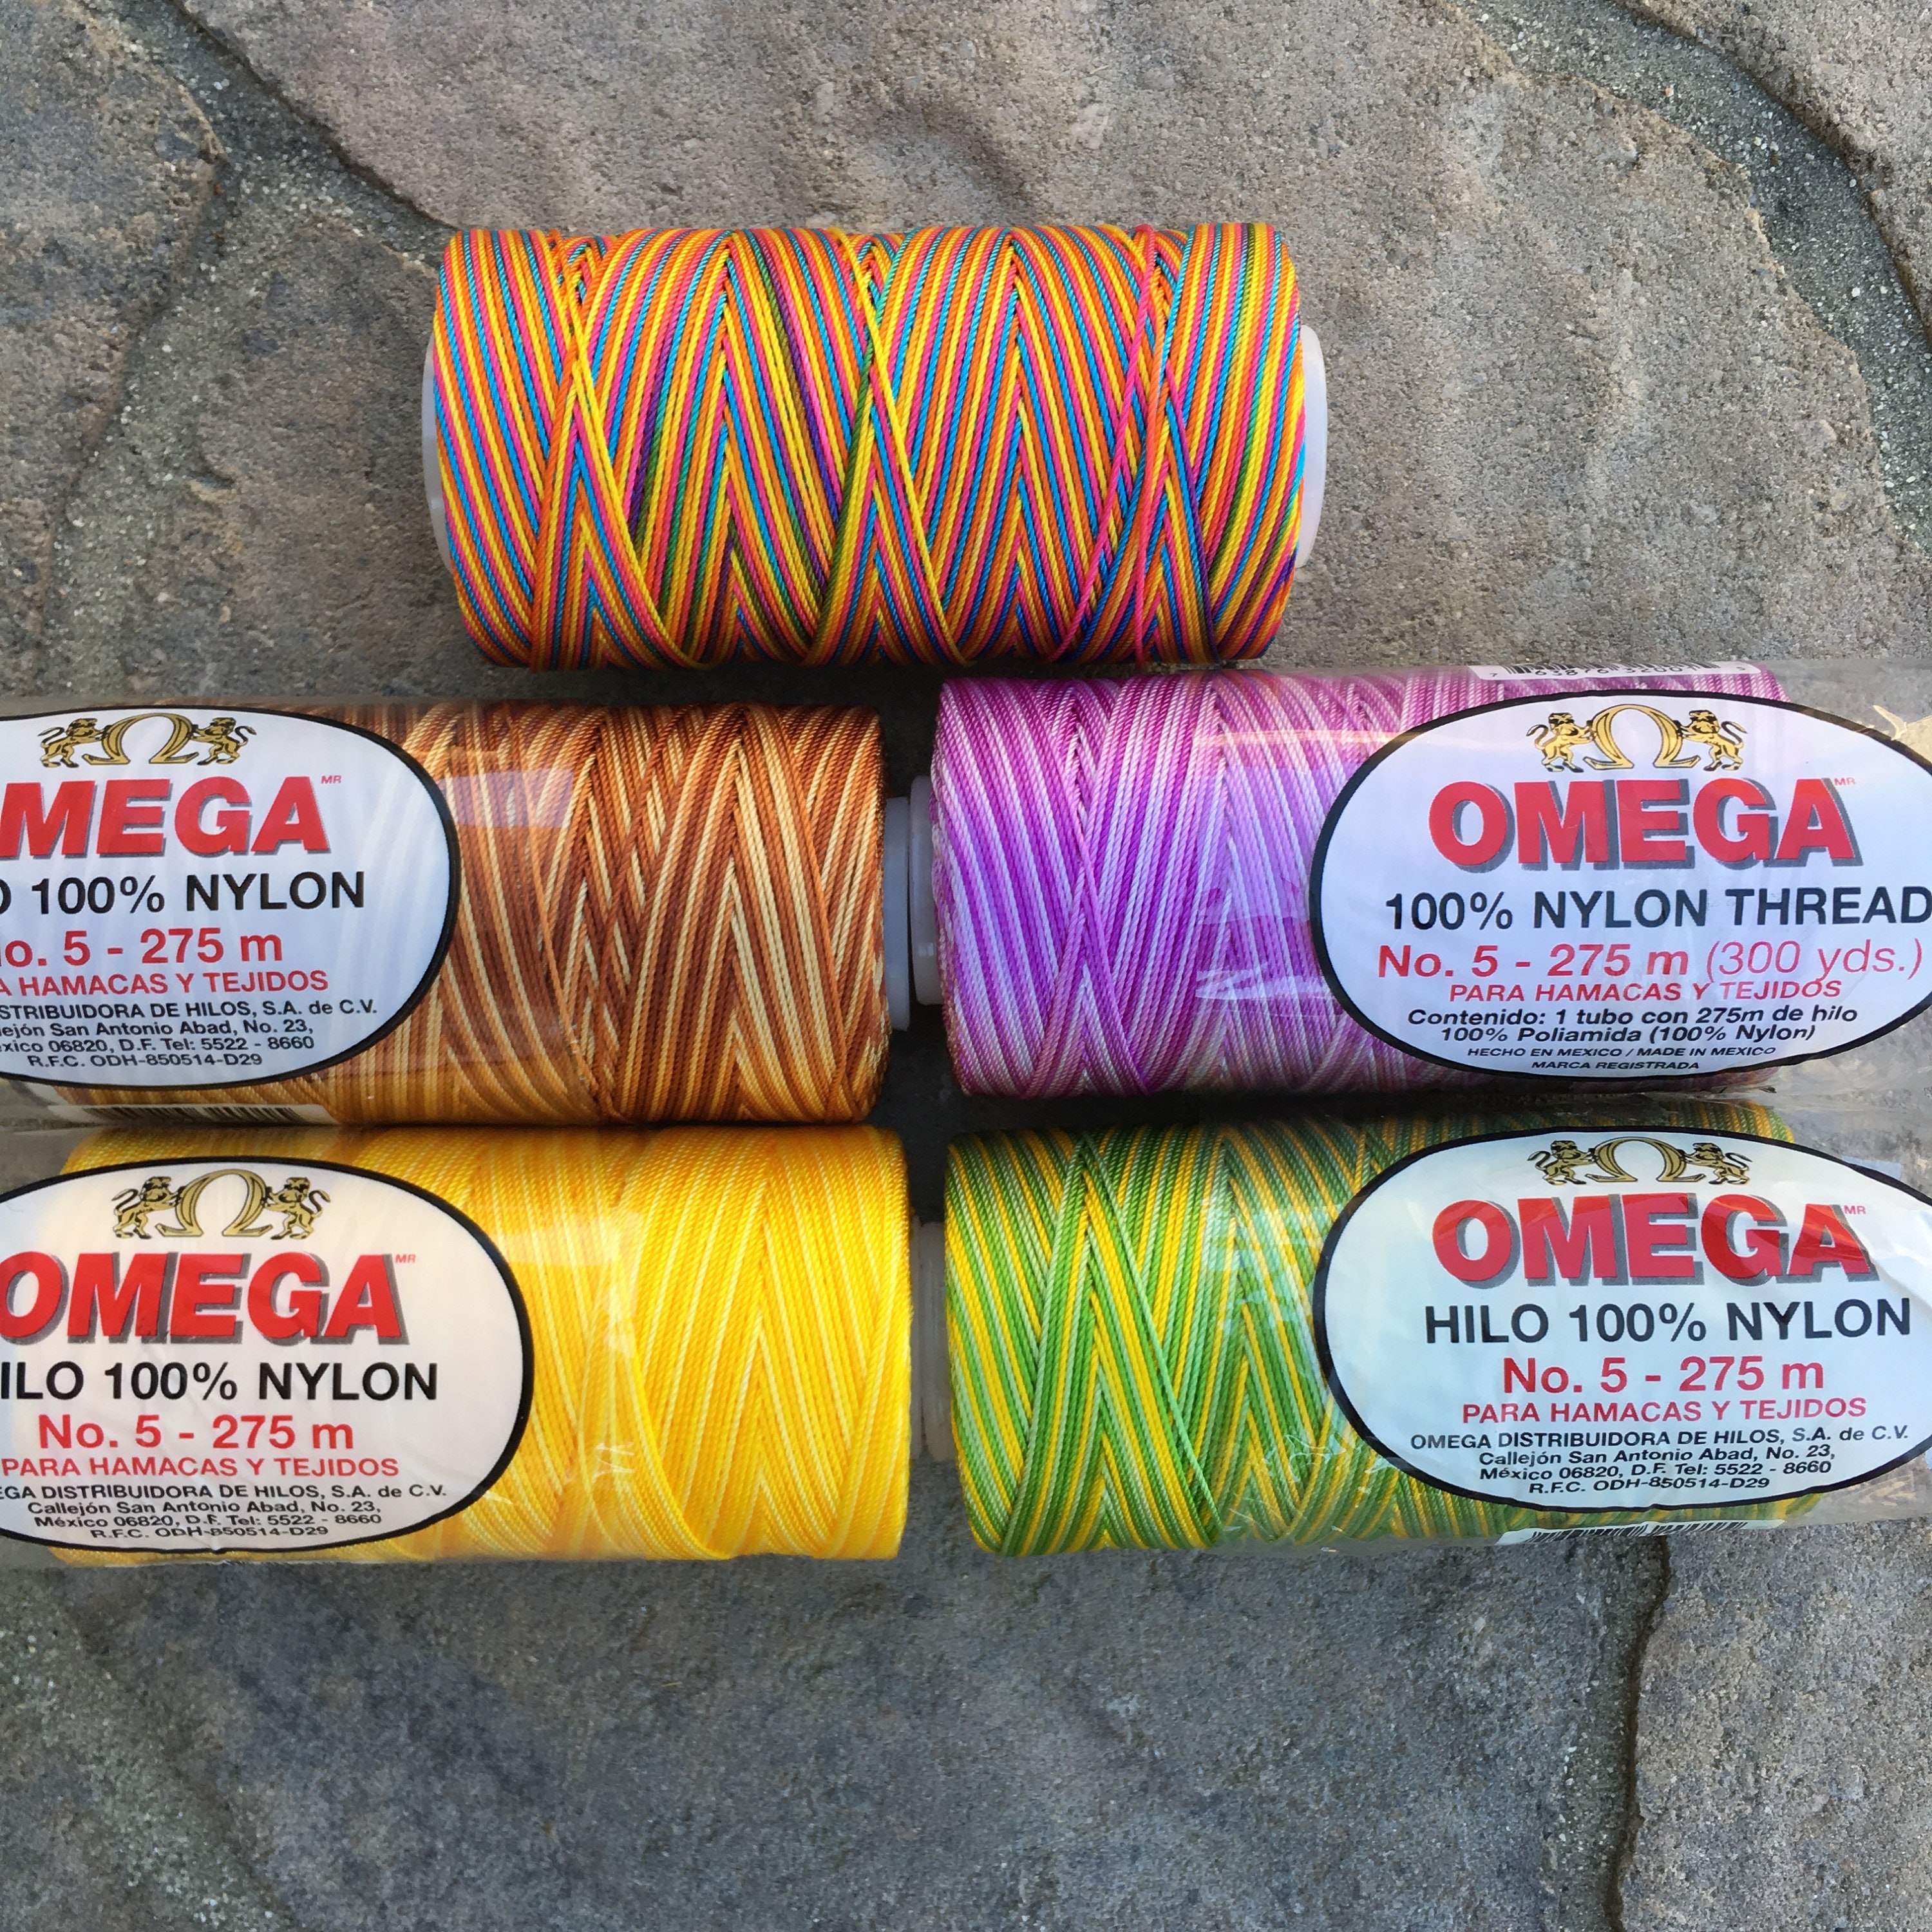 Omega Nylon Thread Online